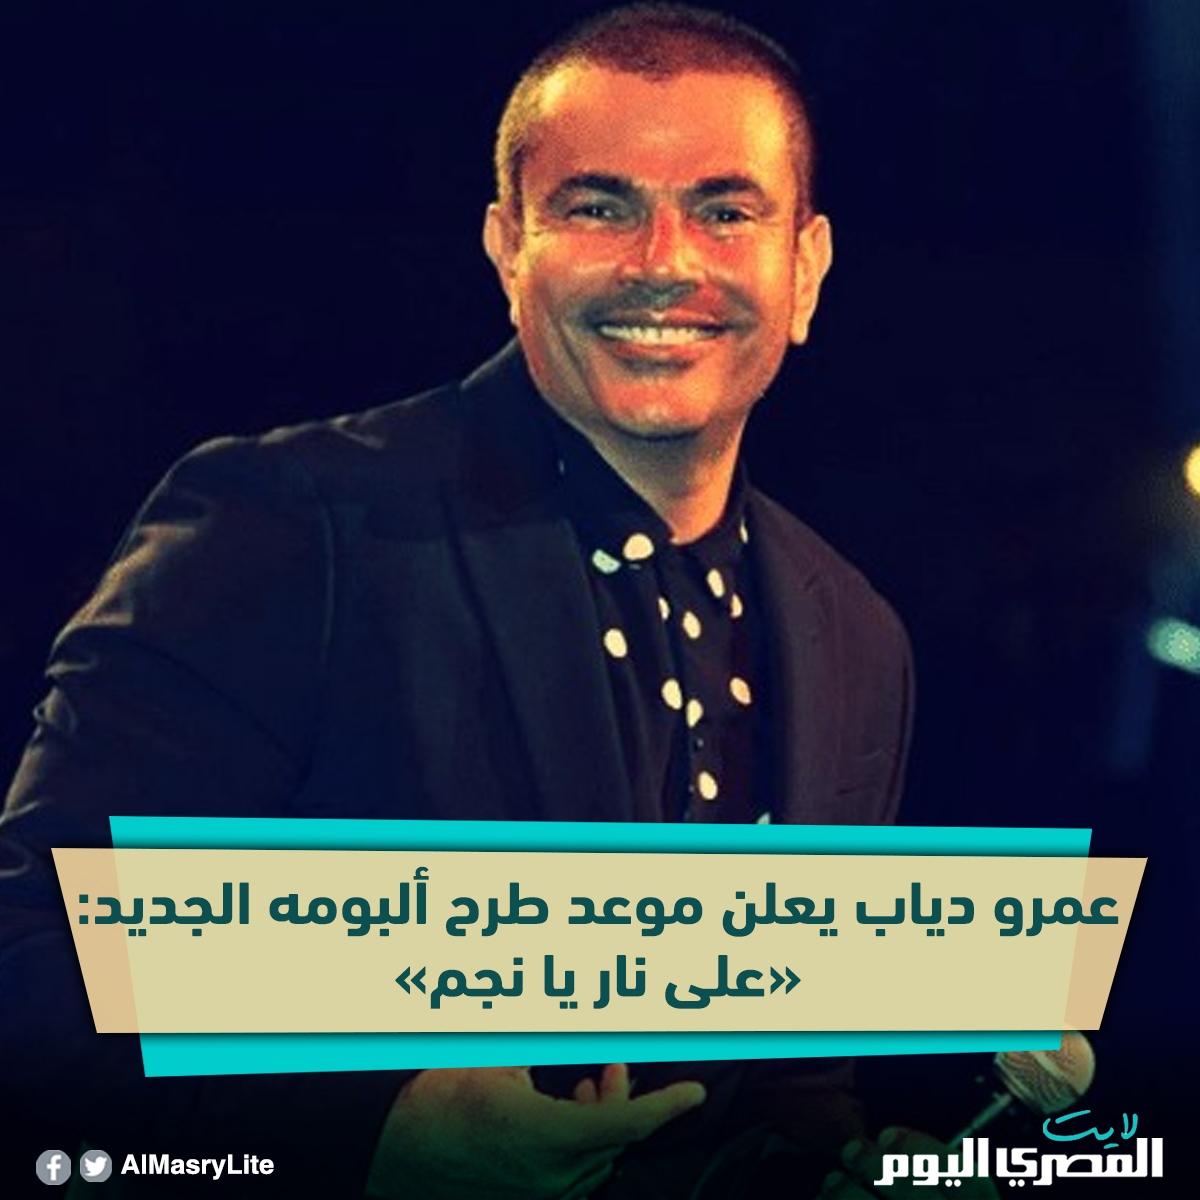 شاهد عمرو دياب يعلن موعد طرح ألبومه الجديد «على نار يا نجم»